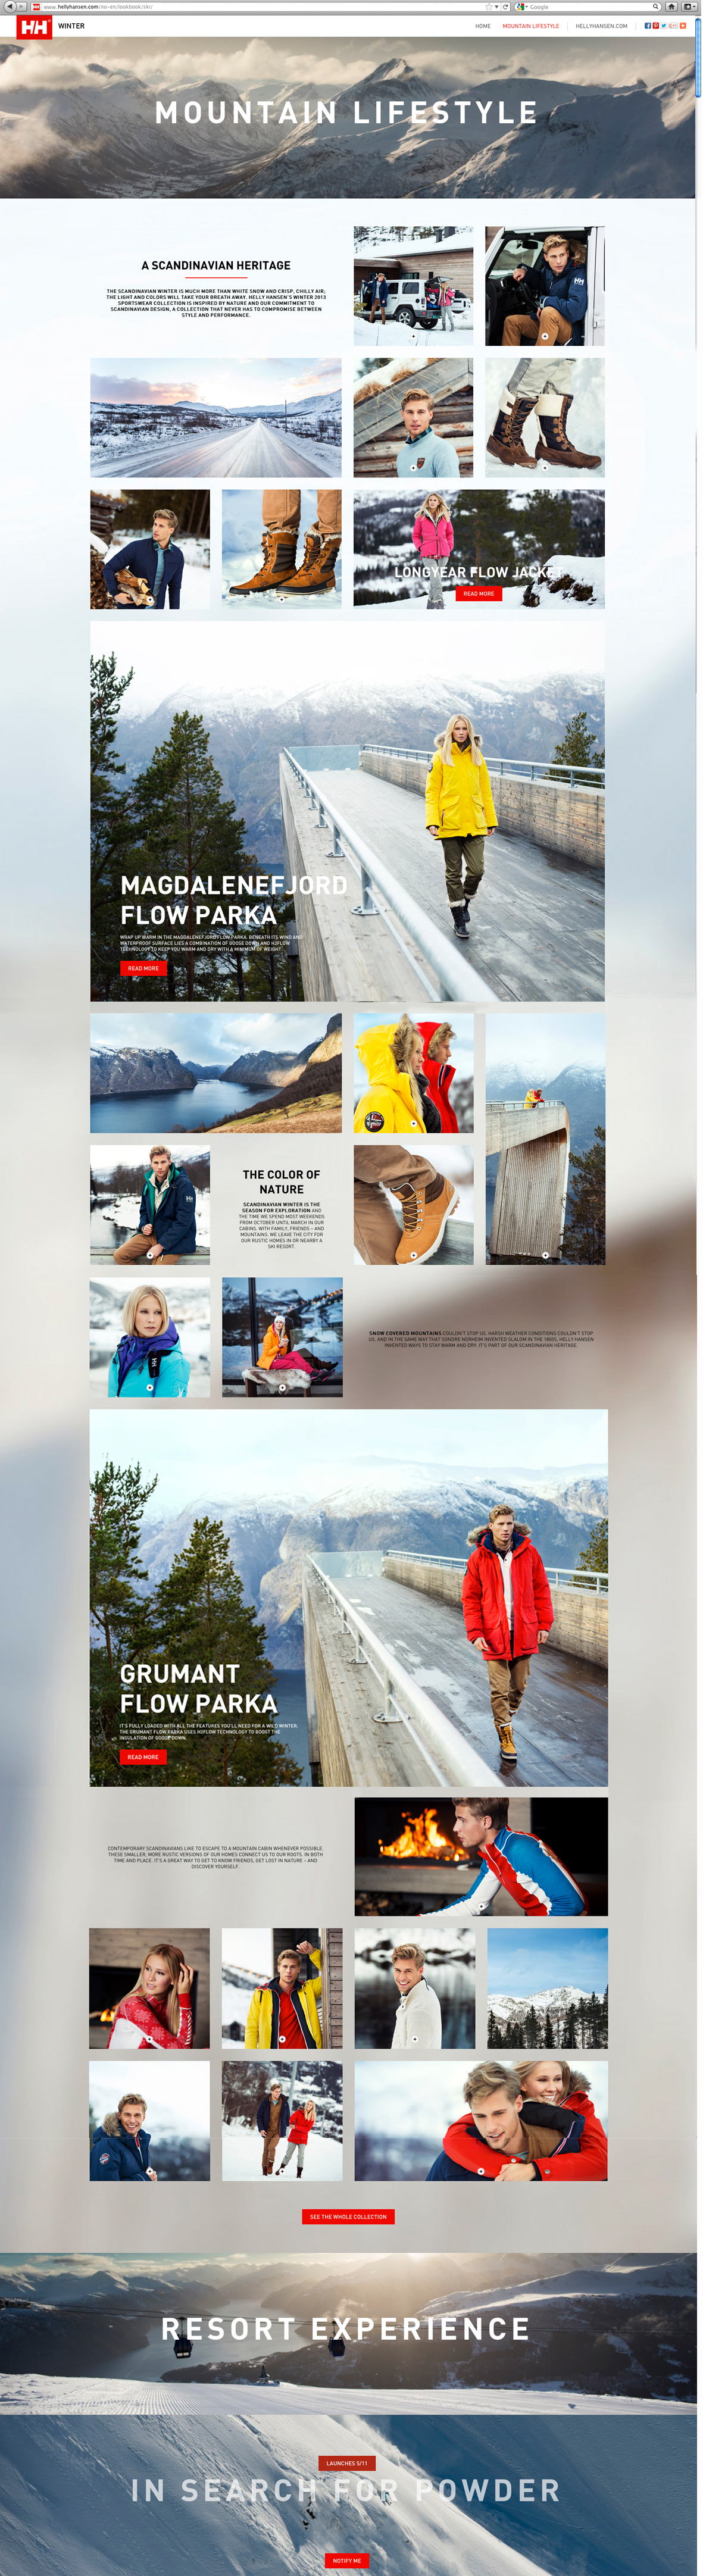 Sportswear Lookbook helly hansen skiwear winter norway Ski digital